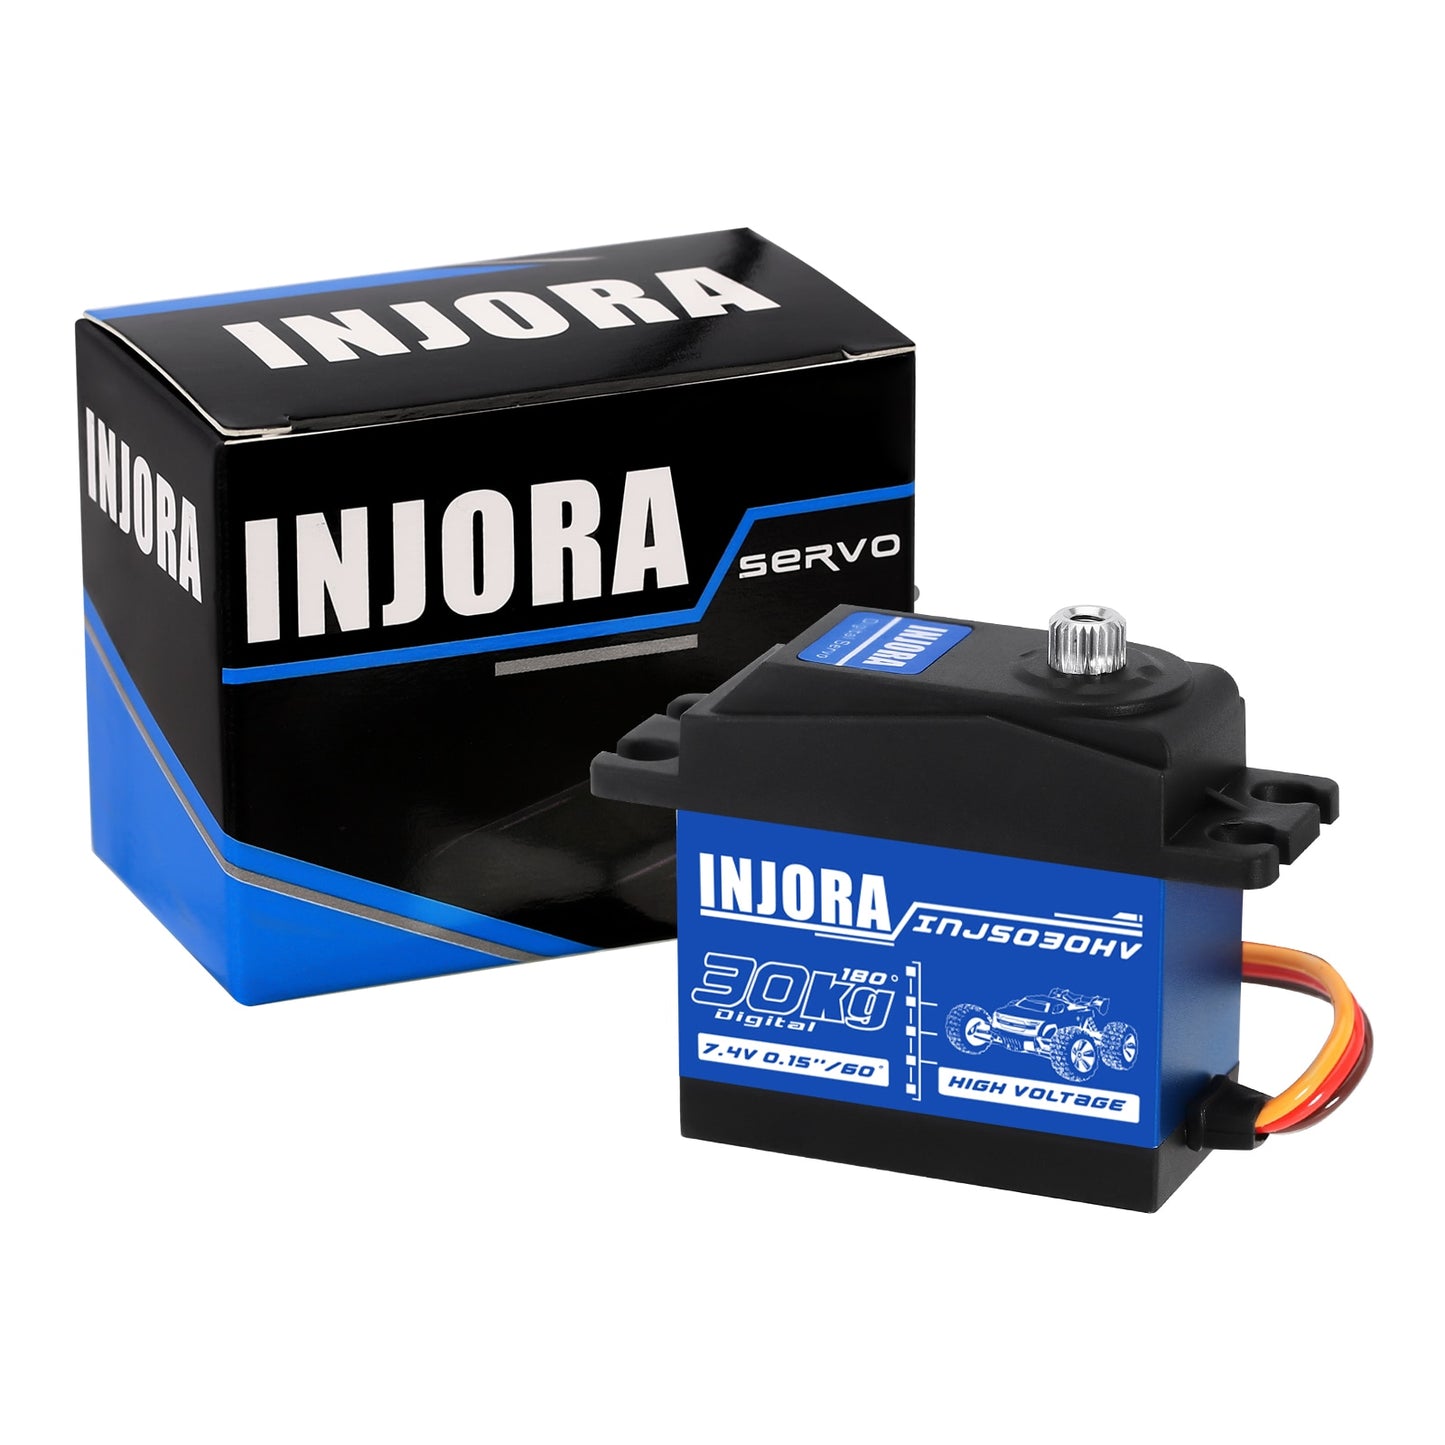 INJORA INJS020HV INJS030HV High Voltage Waterproof 20KG 30KG Digital Servo for 1/10 RC Car ARRMA KRATON